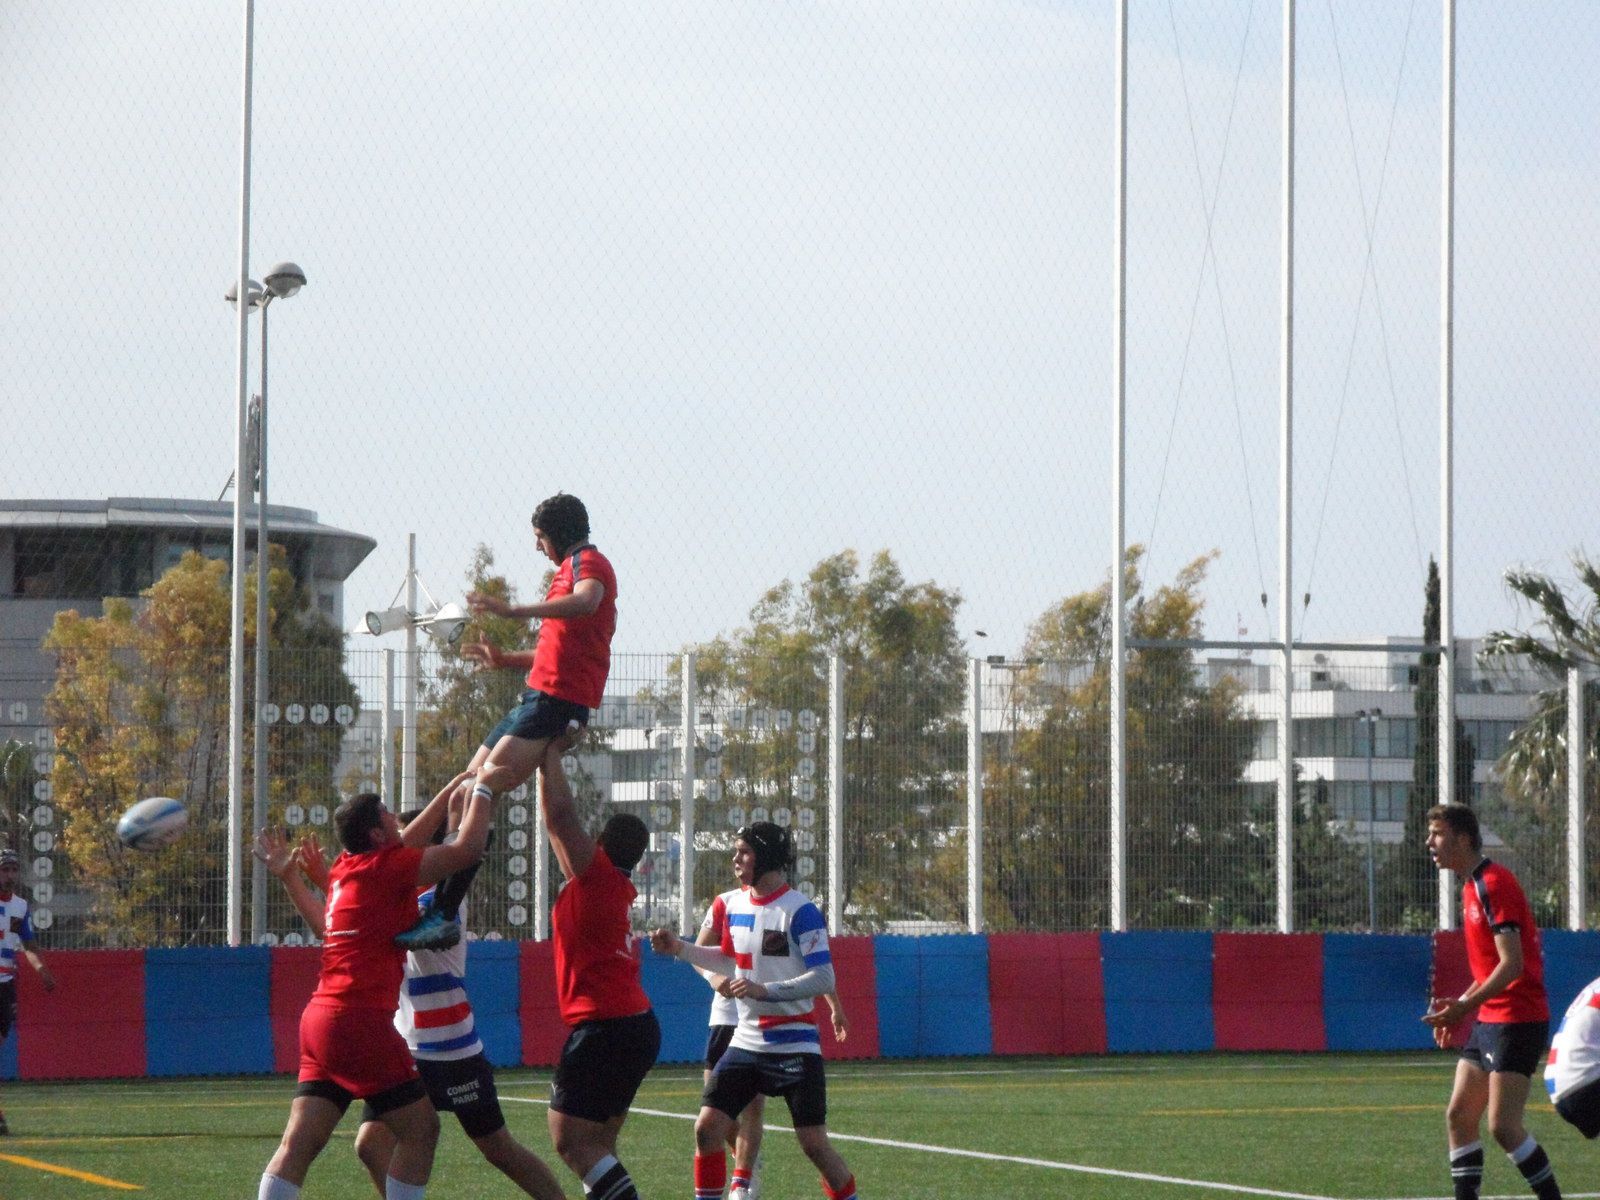 Les cadets rugby, 6 ème, en photos